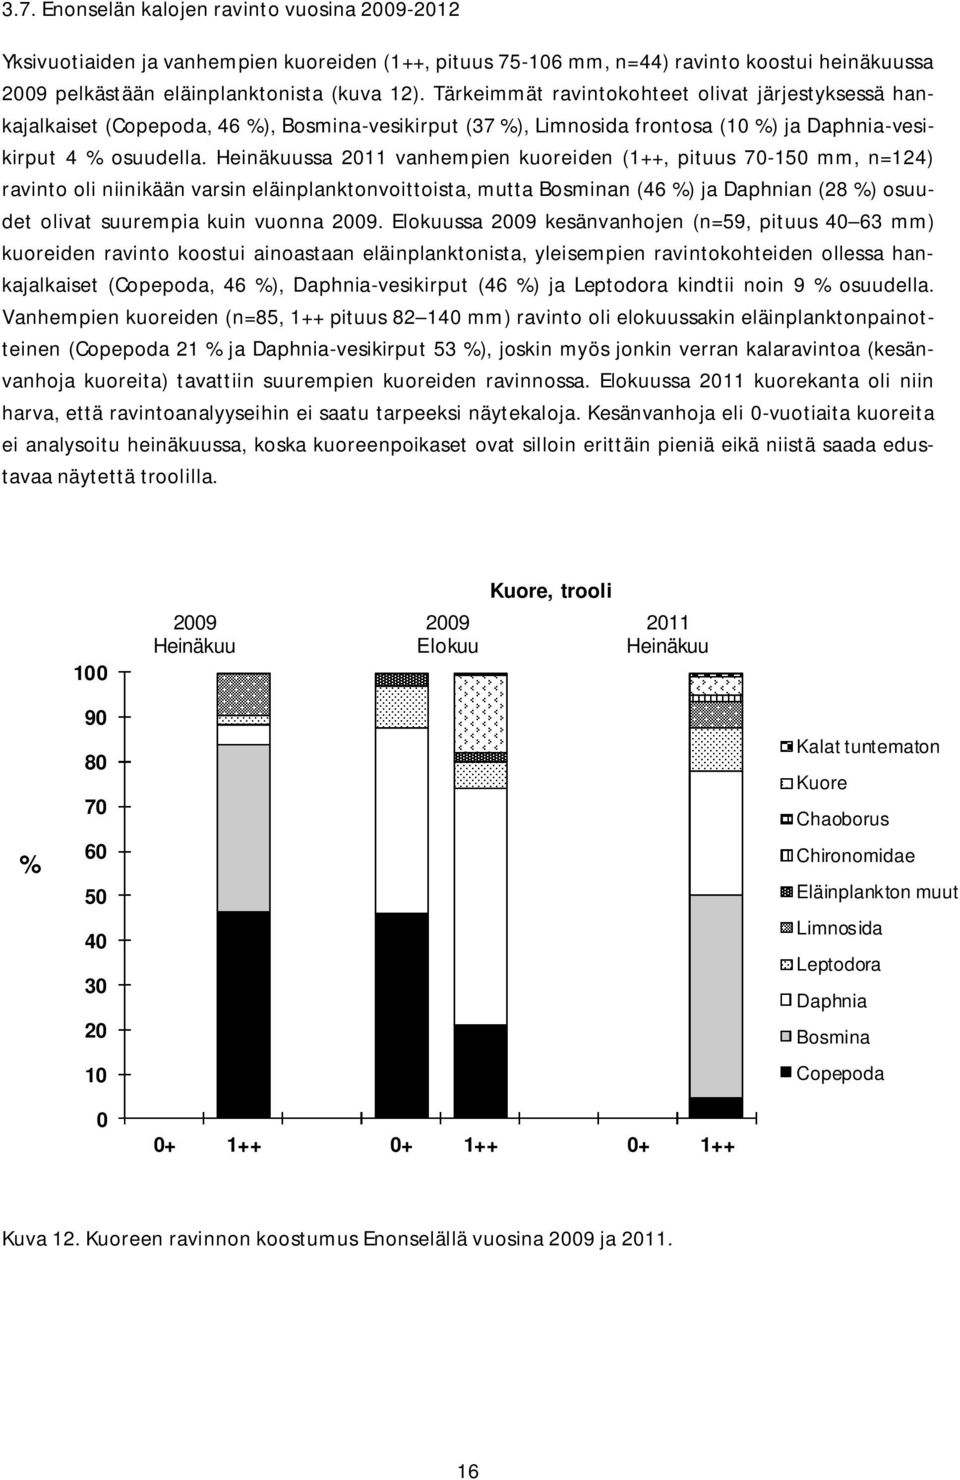 Heinäkuussa 211 vanhempien kuoreiden (1++, pituus 7-15 mm, n=124) ravinto oli niinikään varsin eläinplanktonvoittoista, mutta Bosminan (46 %) ja Daphnian (28 %) osuudet olivat suurempia kuin vuonna